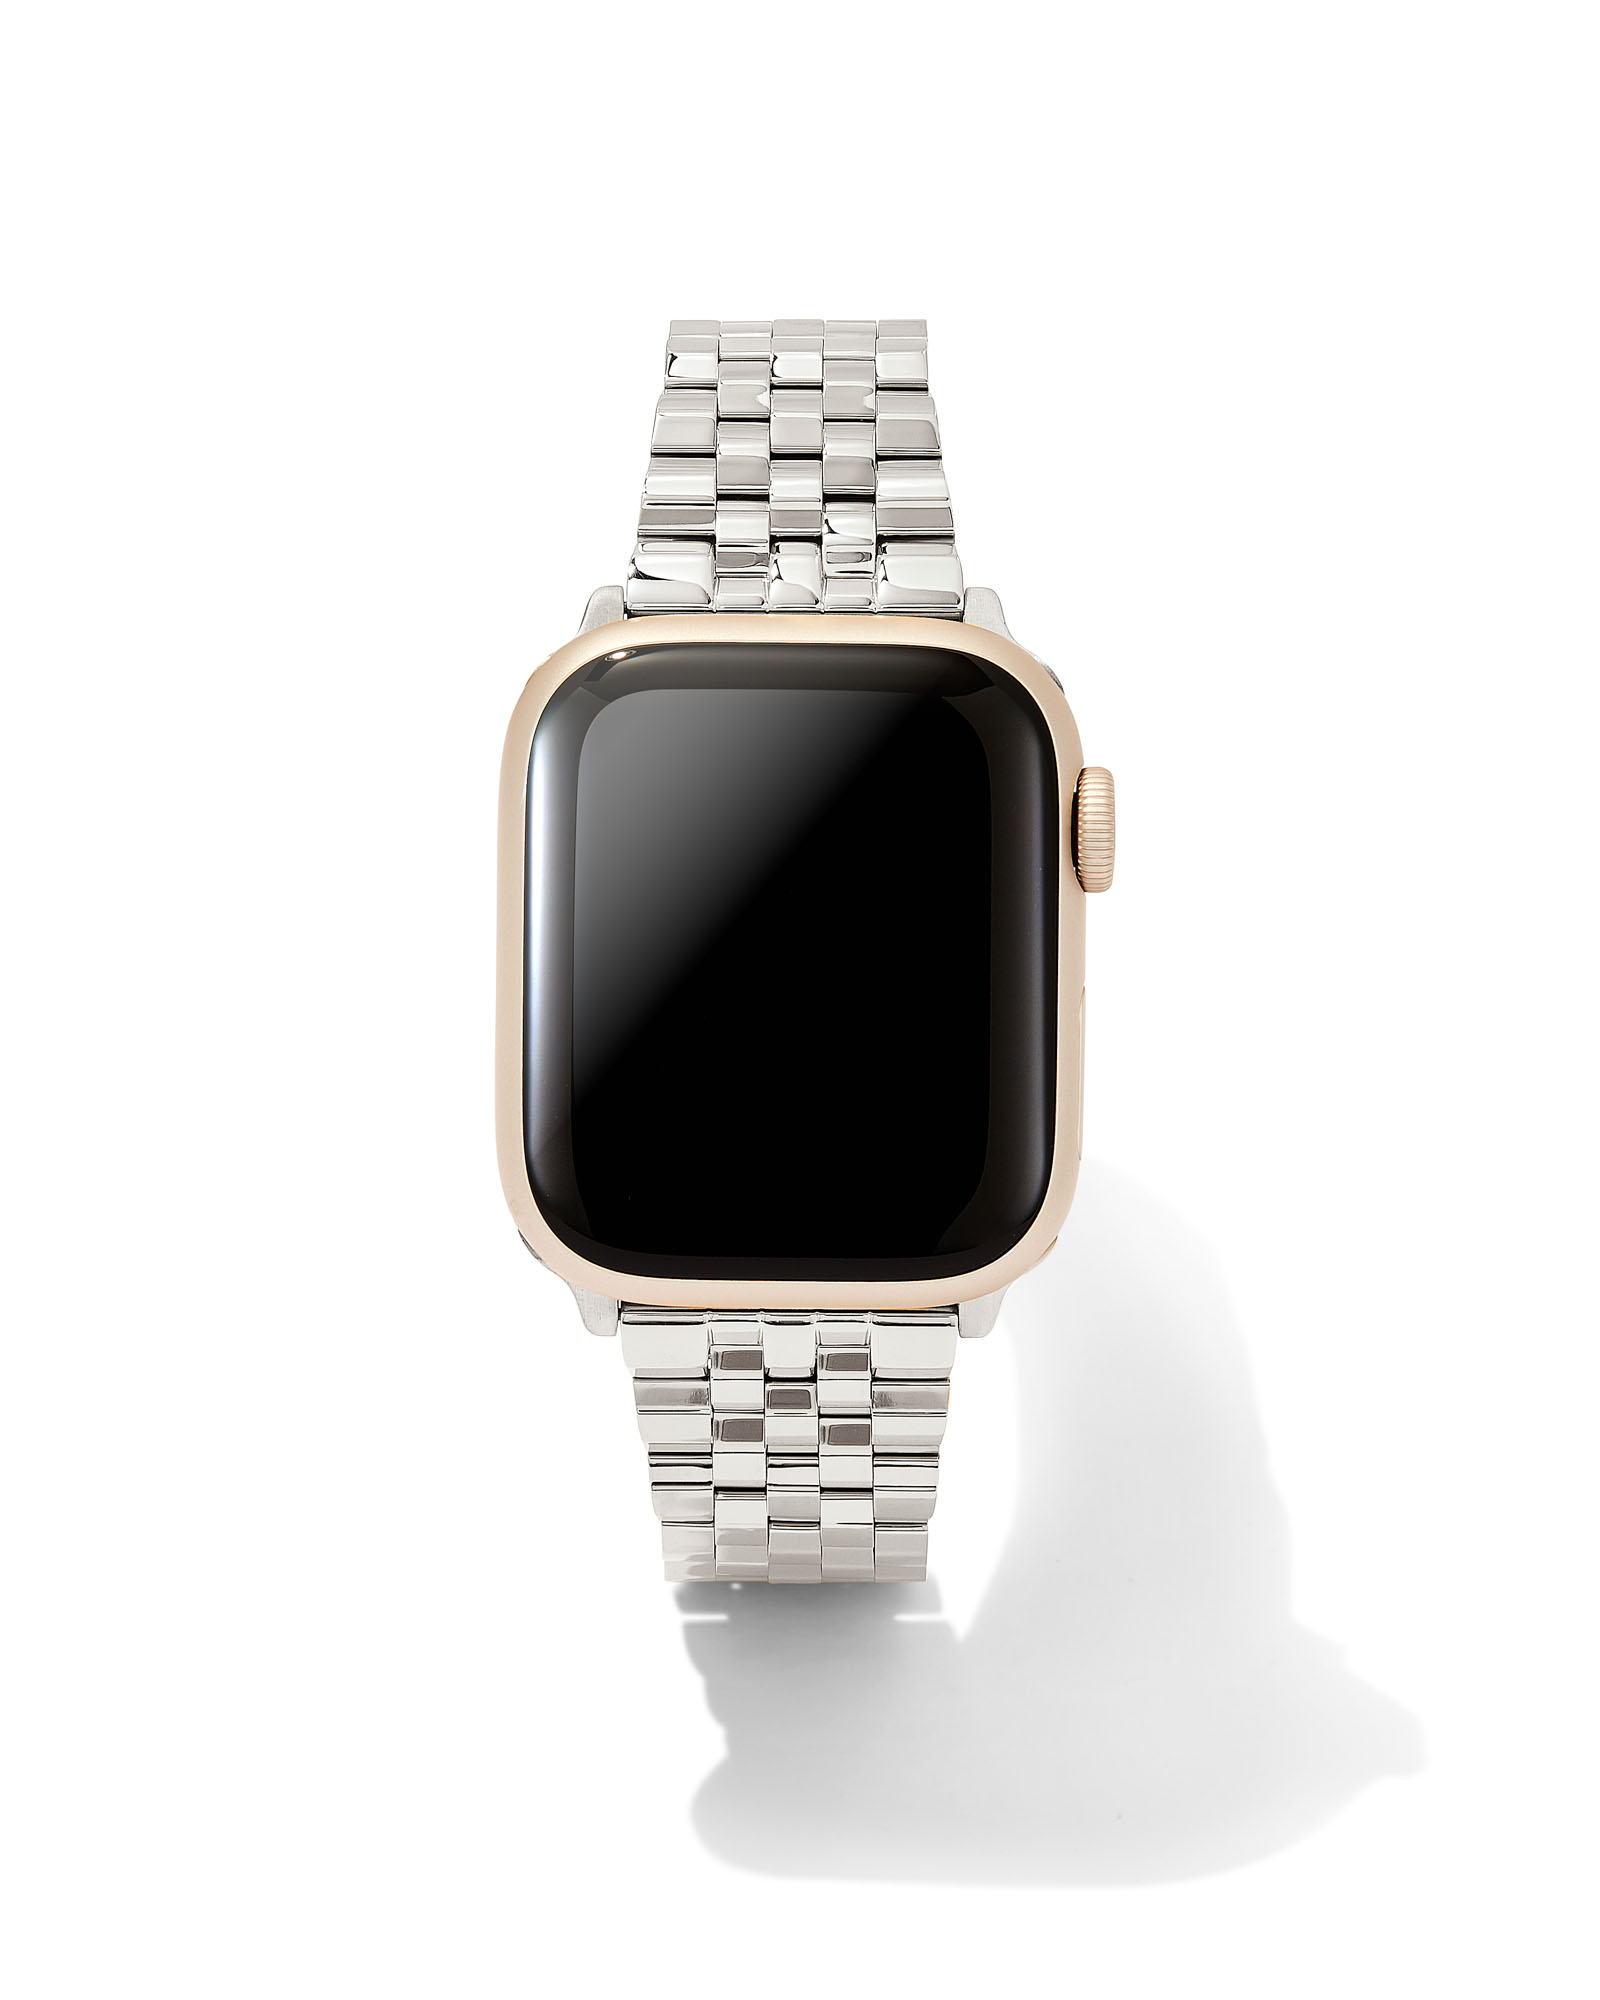 Bracelet stack + L.V. Apple watch band  Watch bands, Apple watch bands, Apple  watch